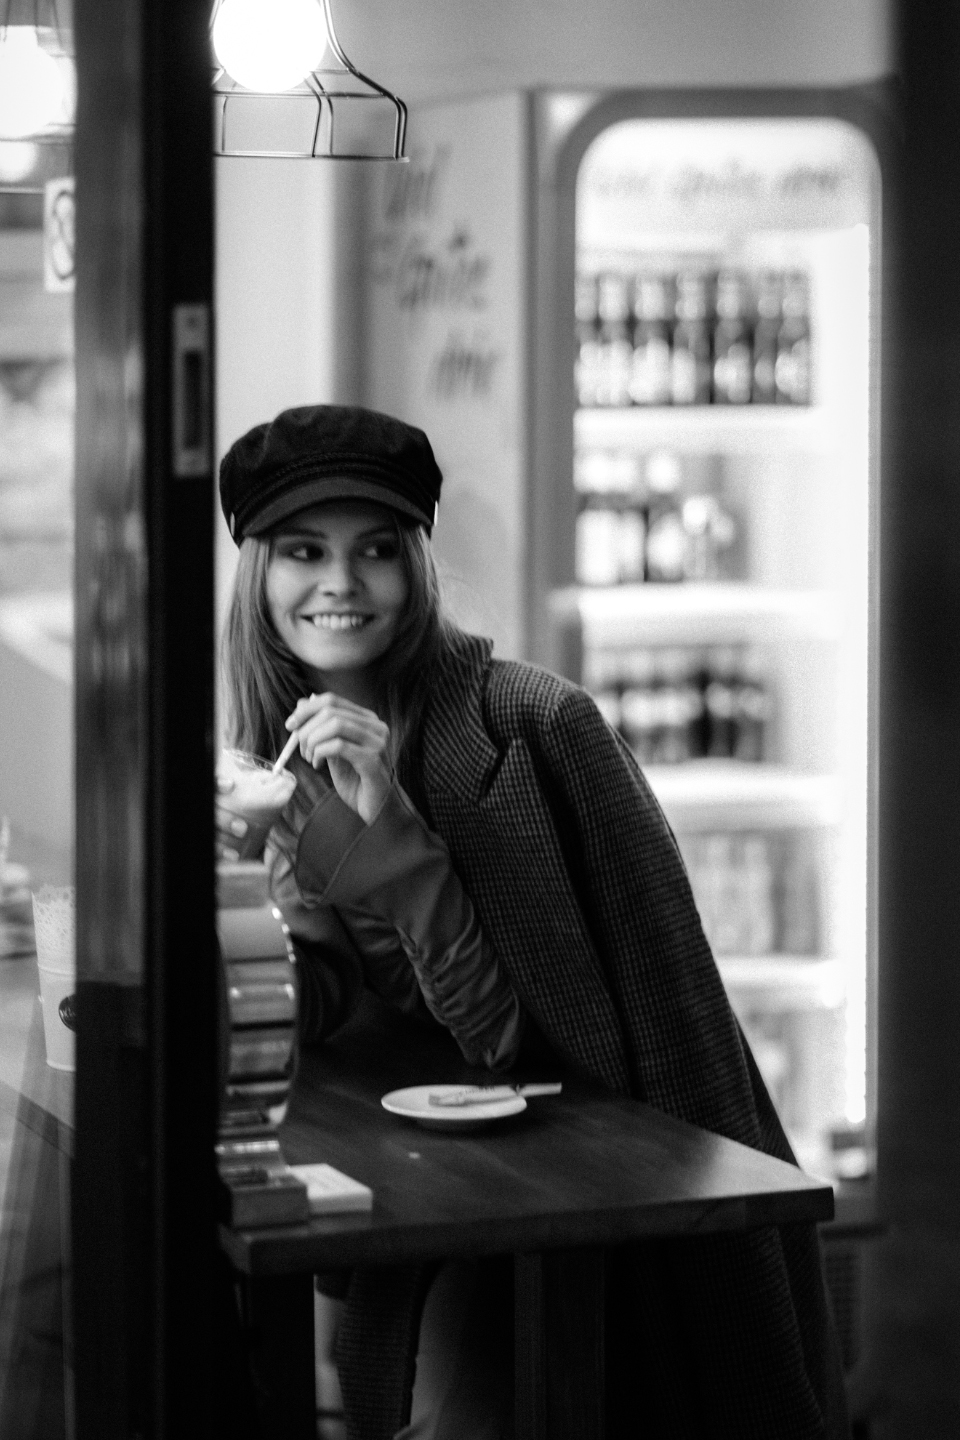 Schwarz-Weiß Portrait einer lächelnden Frau mit langen blonden Haaren und einem schwarzen Hut, die in einem Café sitzt und einen Kaffee trinkt.